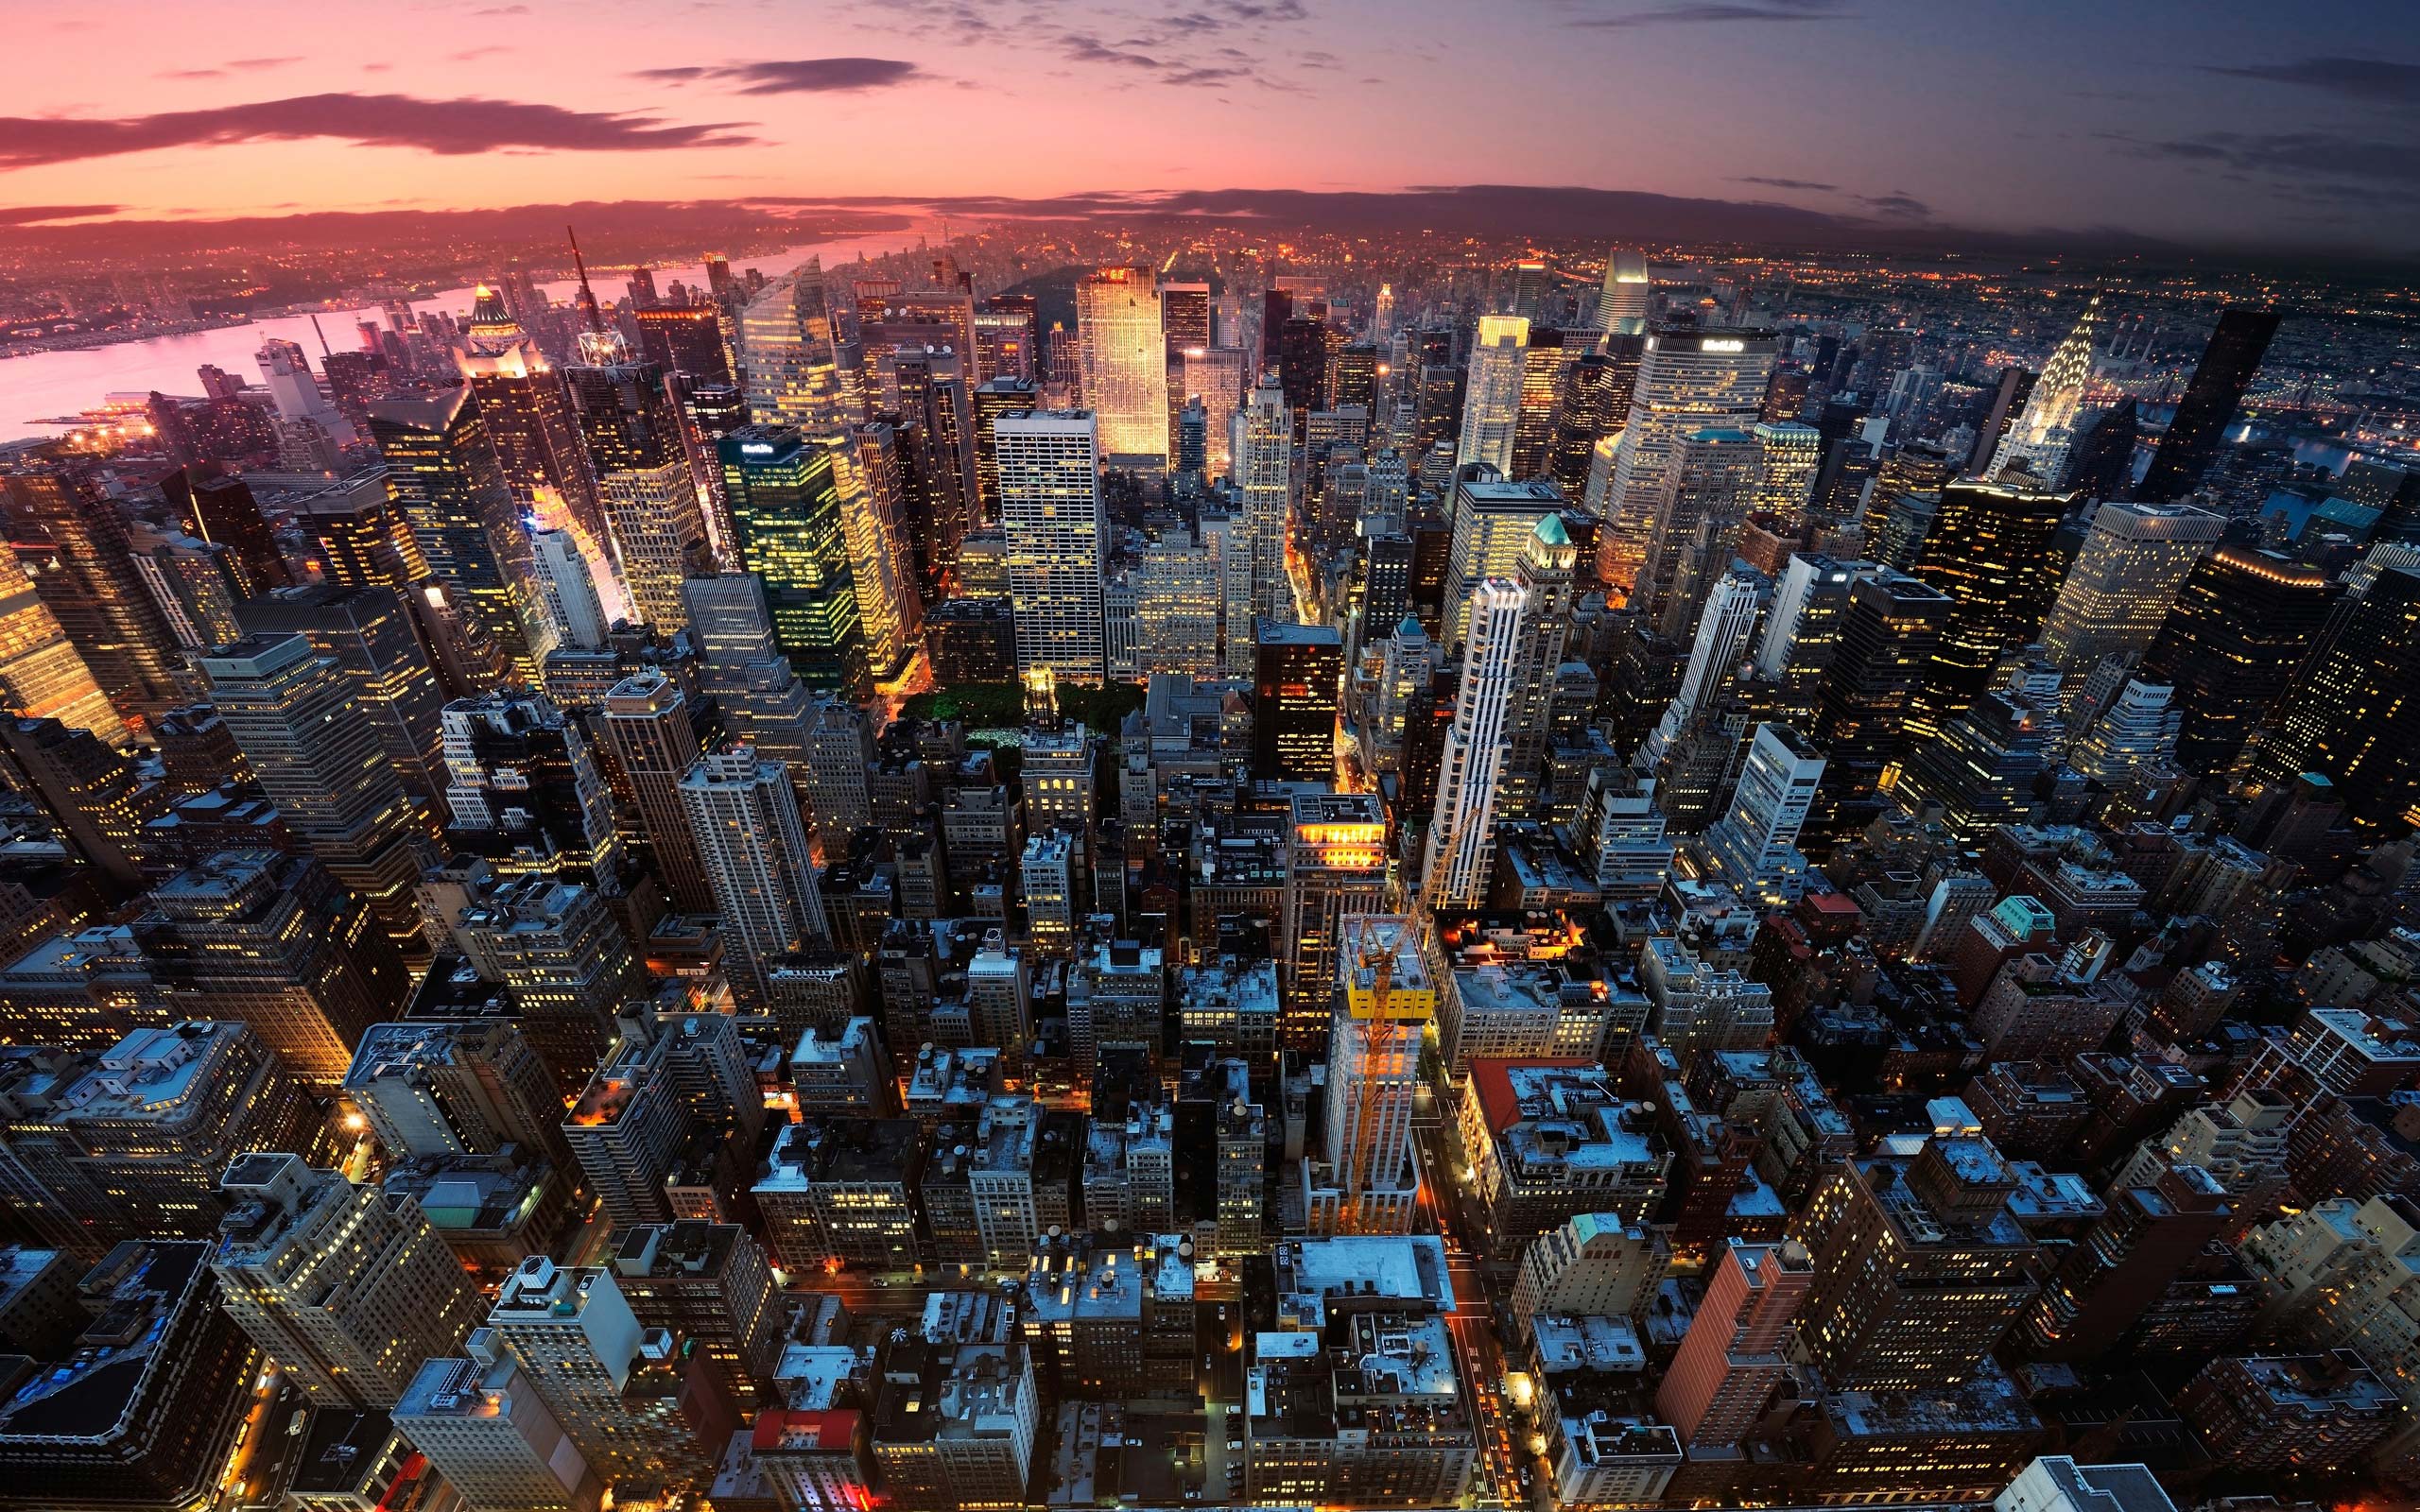 Khám phá thành phố đông đúc nhộn nhịp của New York City một cách đầy chân thật trên màn hình điện thoại của bạn với bộ sưu tập hình nền 4K New York Wallpaper. Chúng tôi đảm bảo rằng bạn sẽ được chiêm ngưỡng những ánh sáng, những con phố, và những tòa nhà đưa mắt nhìn vào.